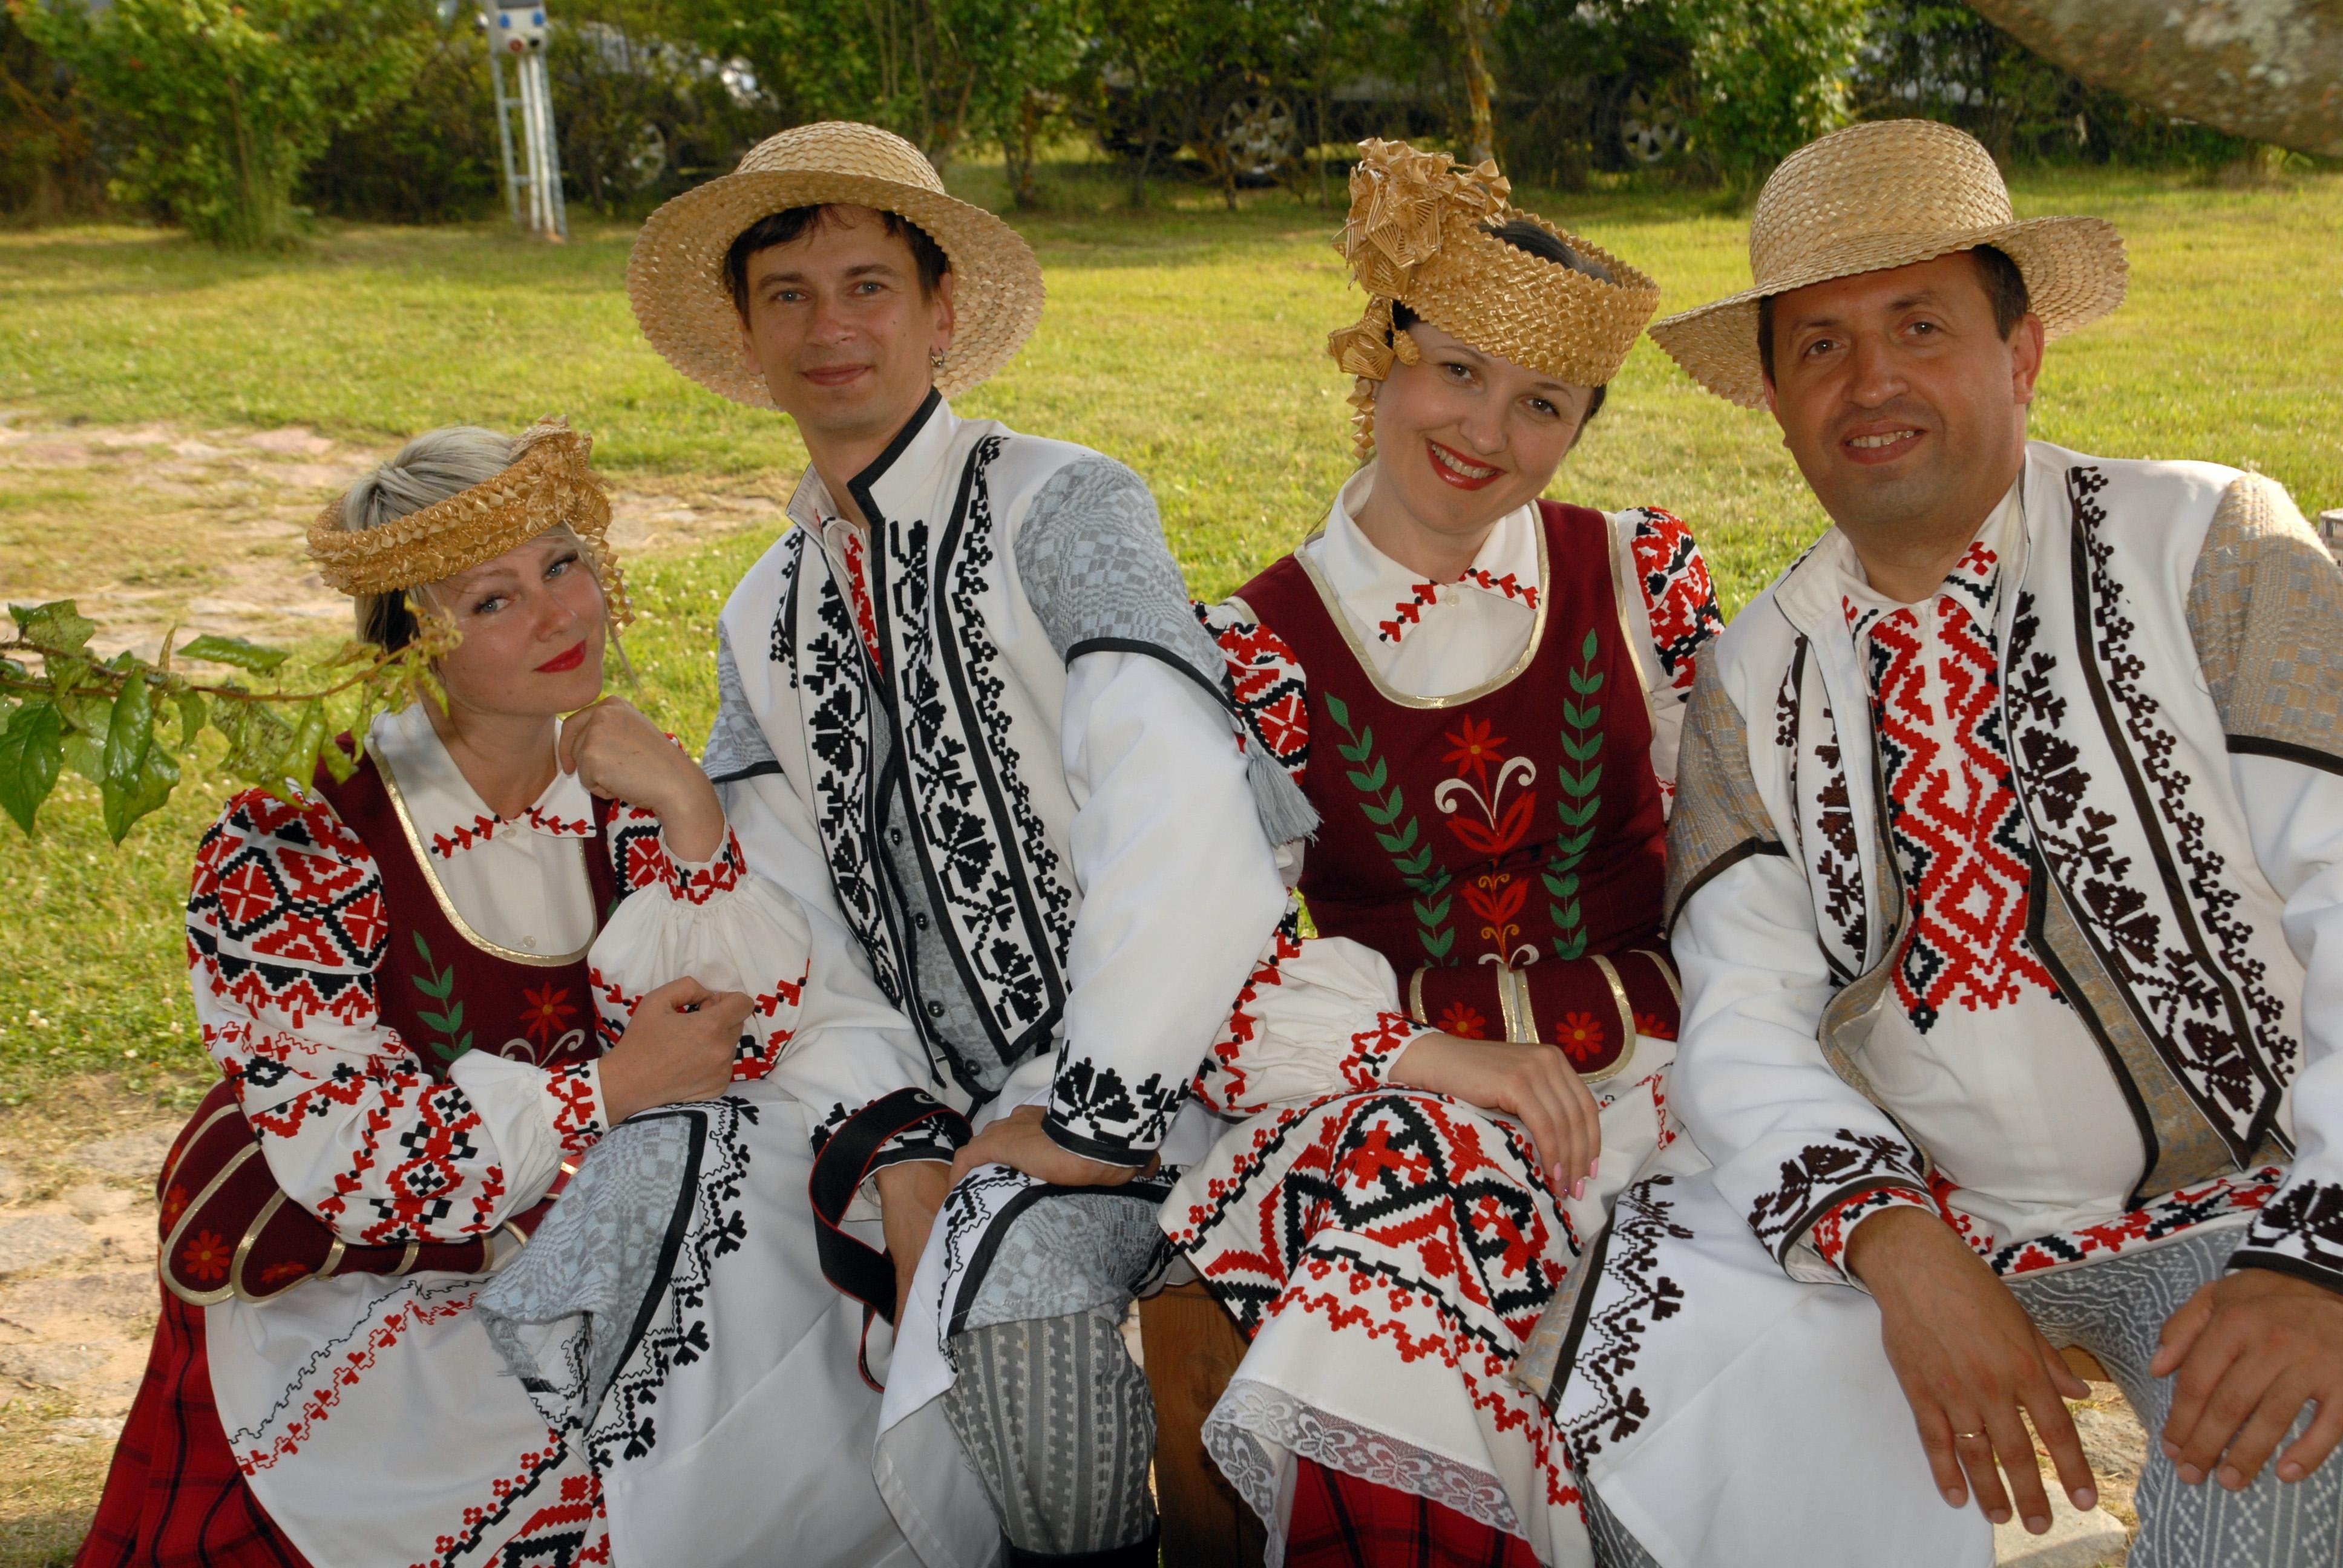 1 национальный белорусский. Белорус и белоруска в национальных костюмах. Белорус и белоруска в национальной одежде. Белоруссия народ нац костюм. Белорусский национальный костюм белорусский.